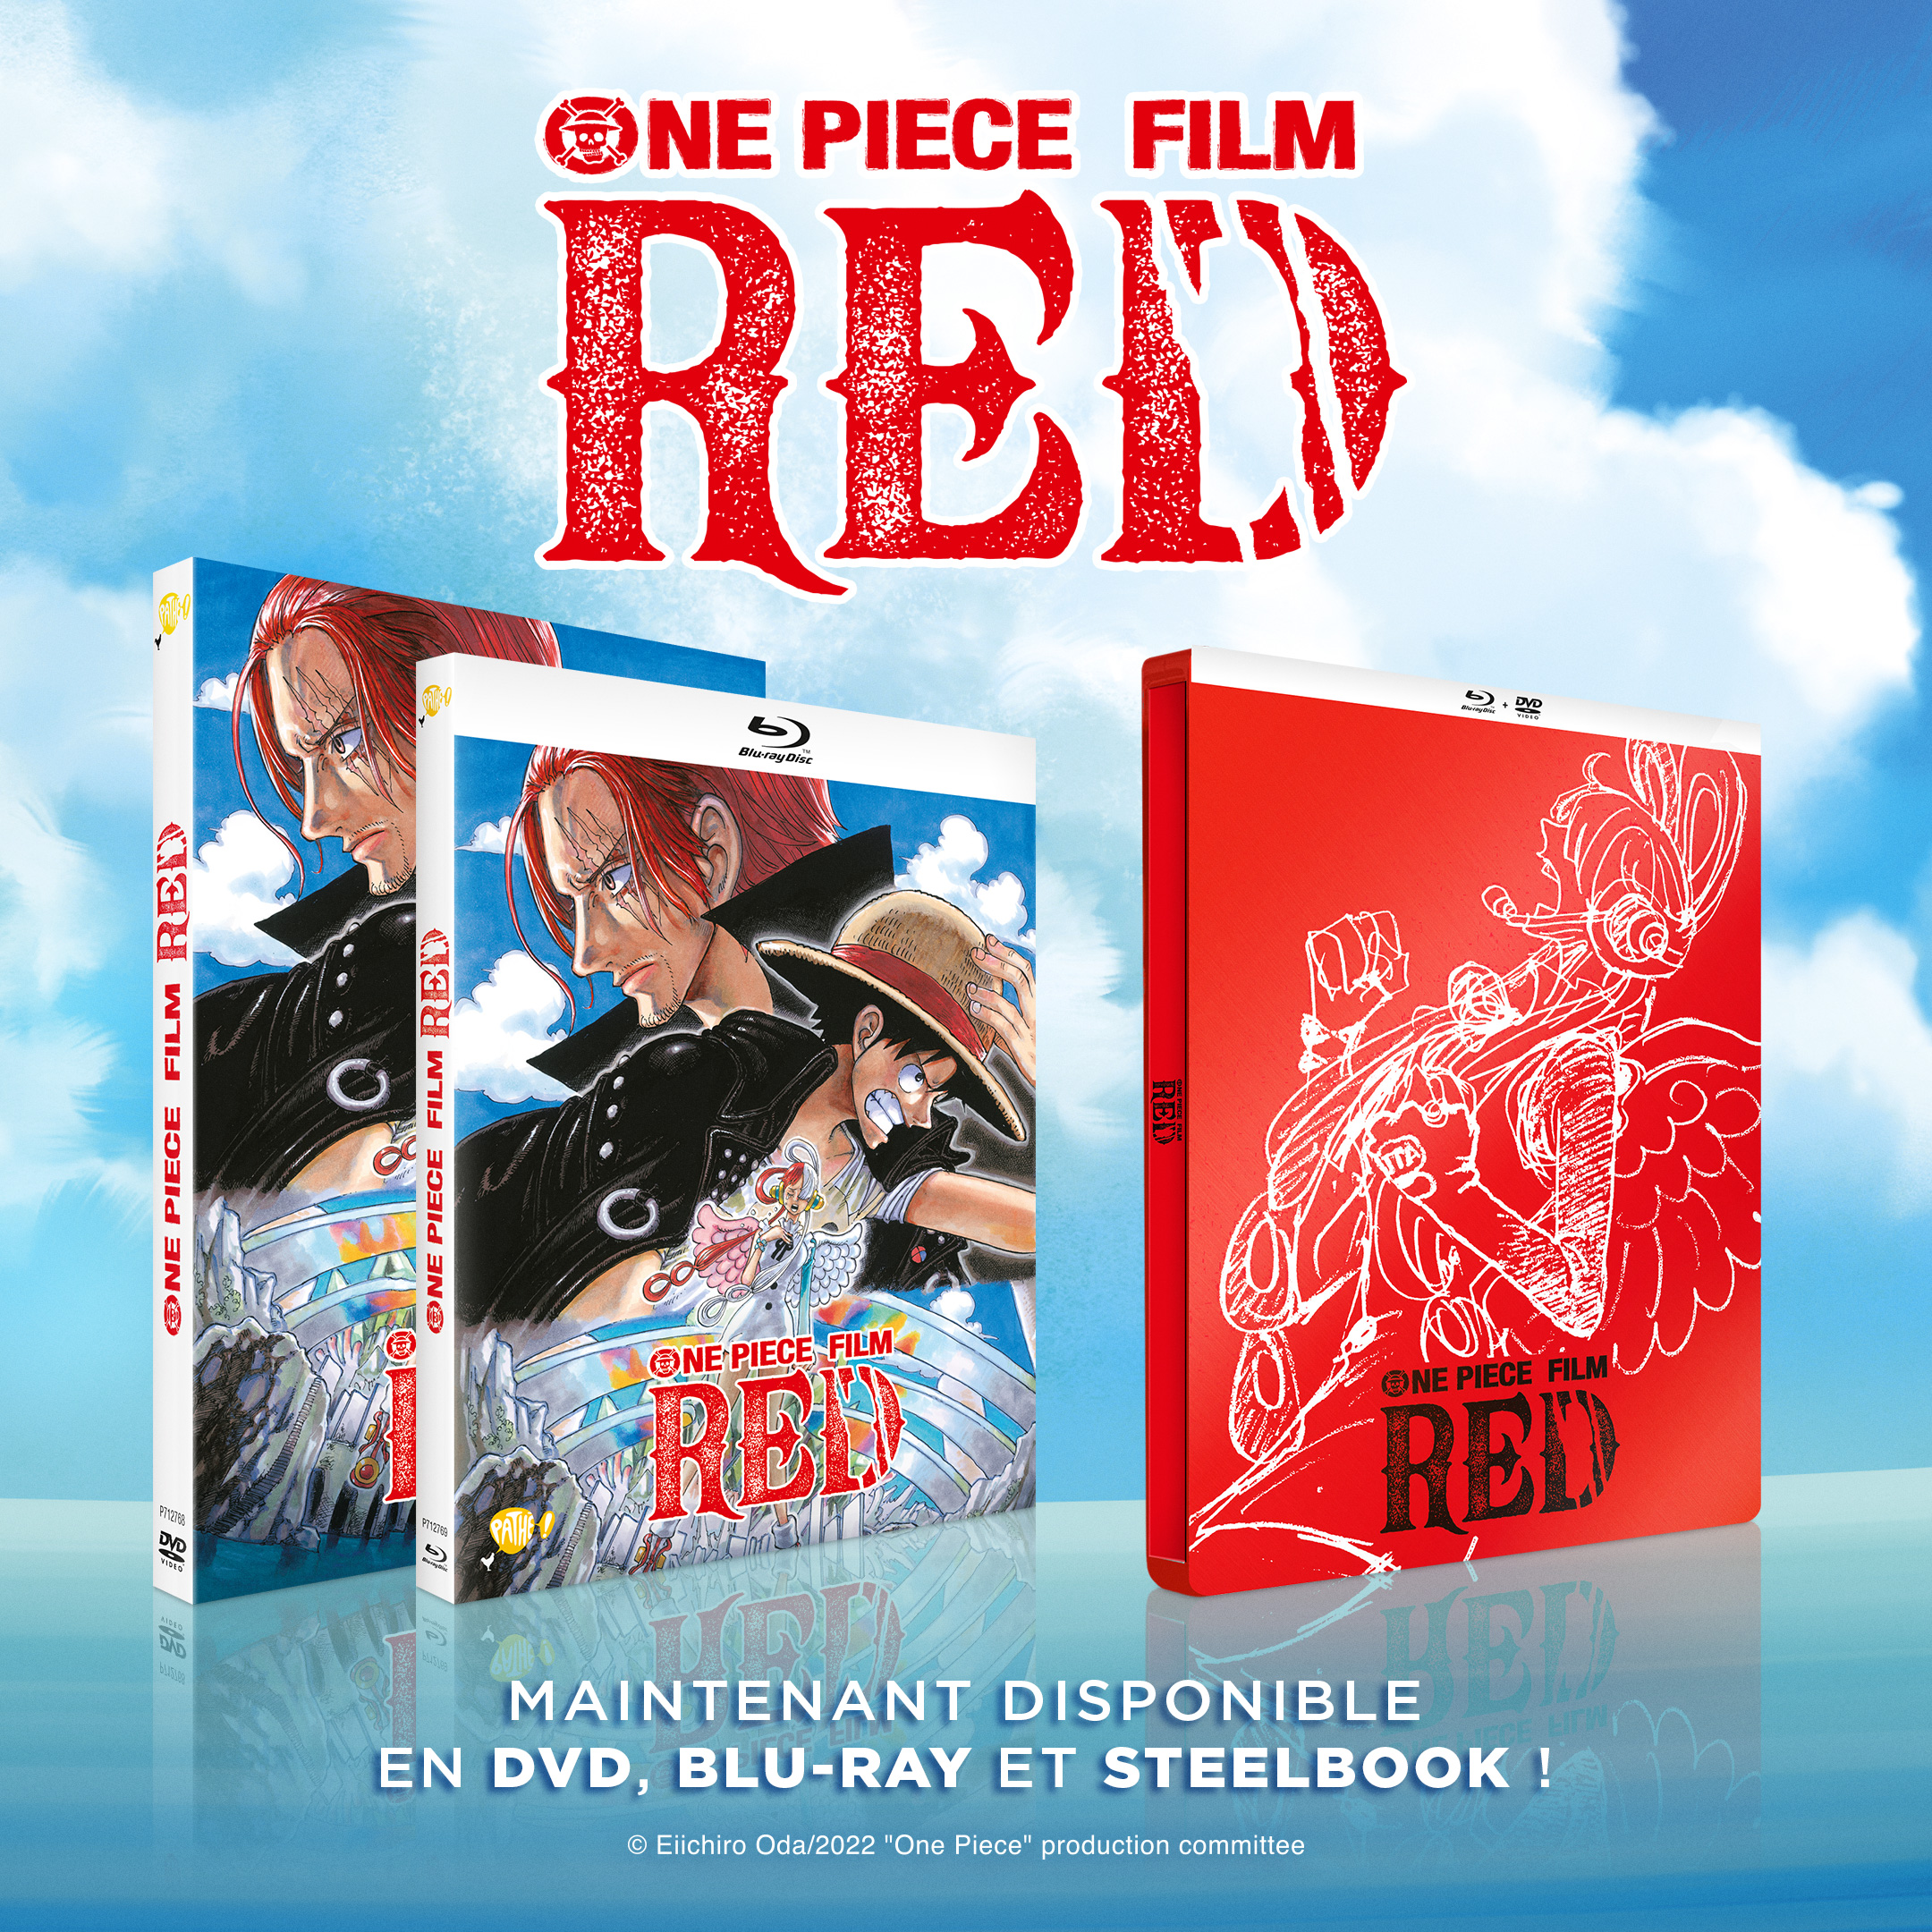 One Piece Film Red  Film red, One piece, Film